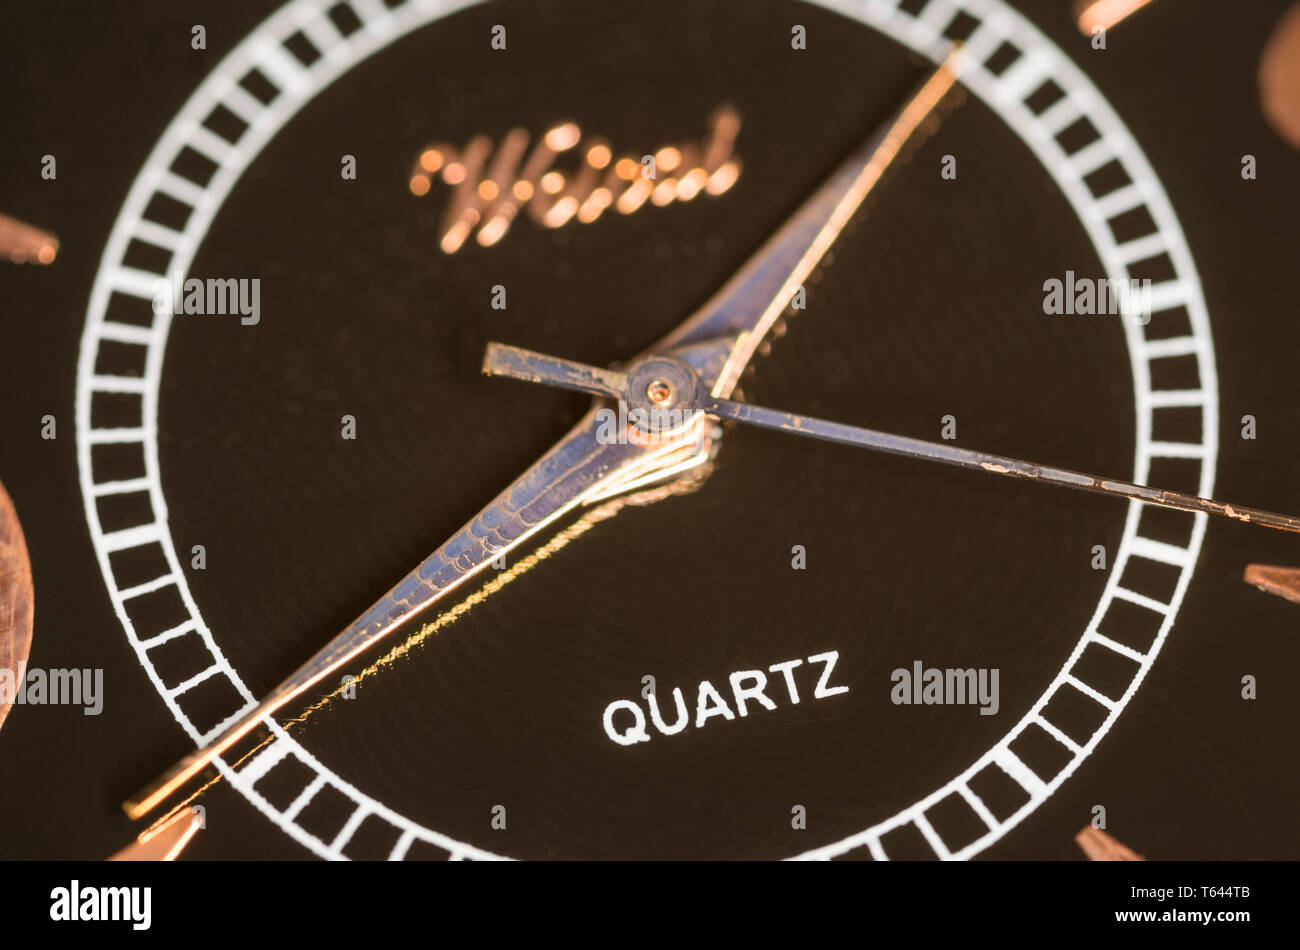 Logo de quartz sur une montre ou une horloge à l'aide d'un mécanisme quartz affichage heure, minute et seconde mains. Banque D'Images